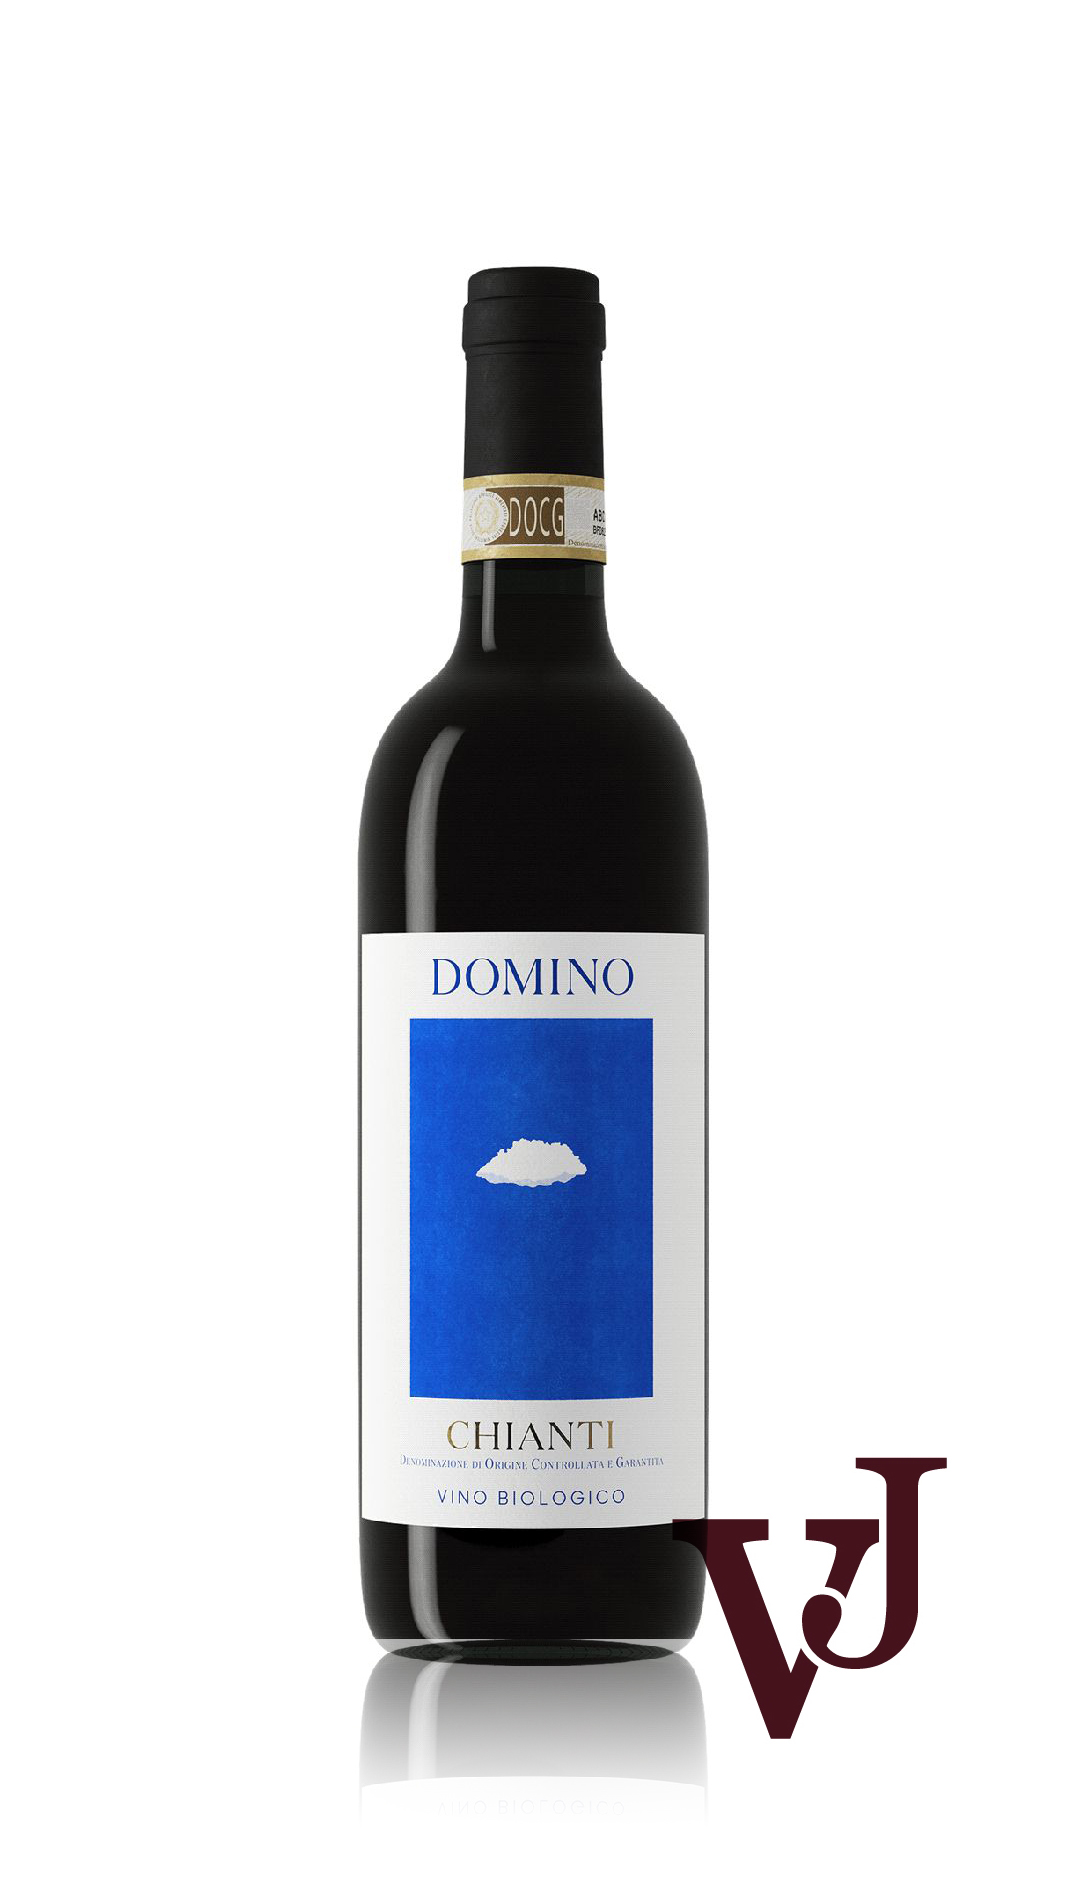 Rött Vin - Domino Chianti 2020 artikel nummer 7016801 från producenten CANTINA SOCIALE COLLI FIORENTINI från området Italien